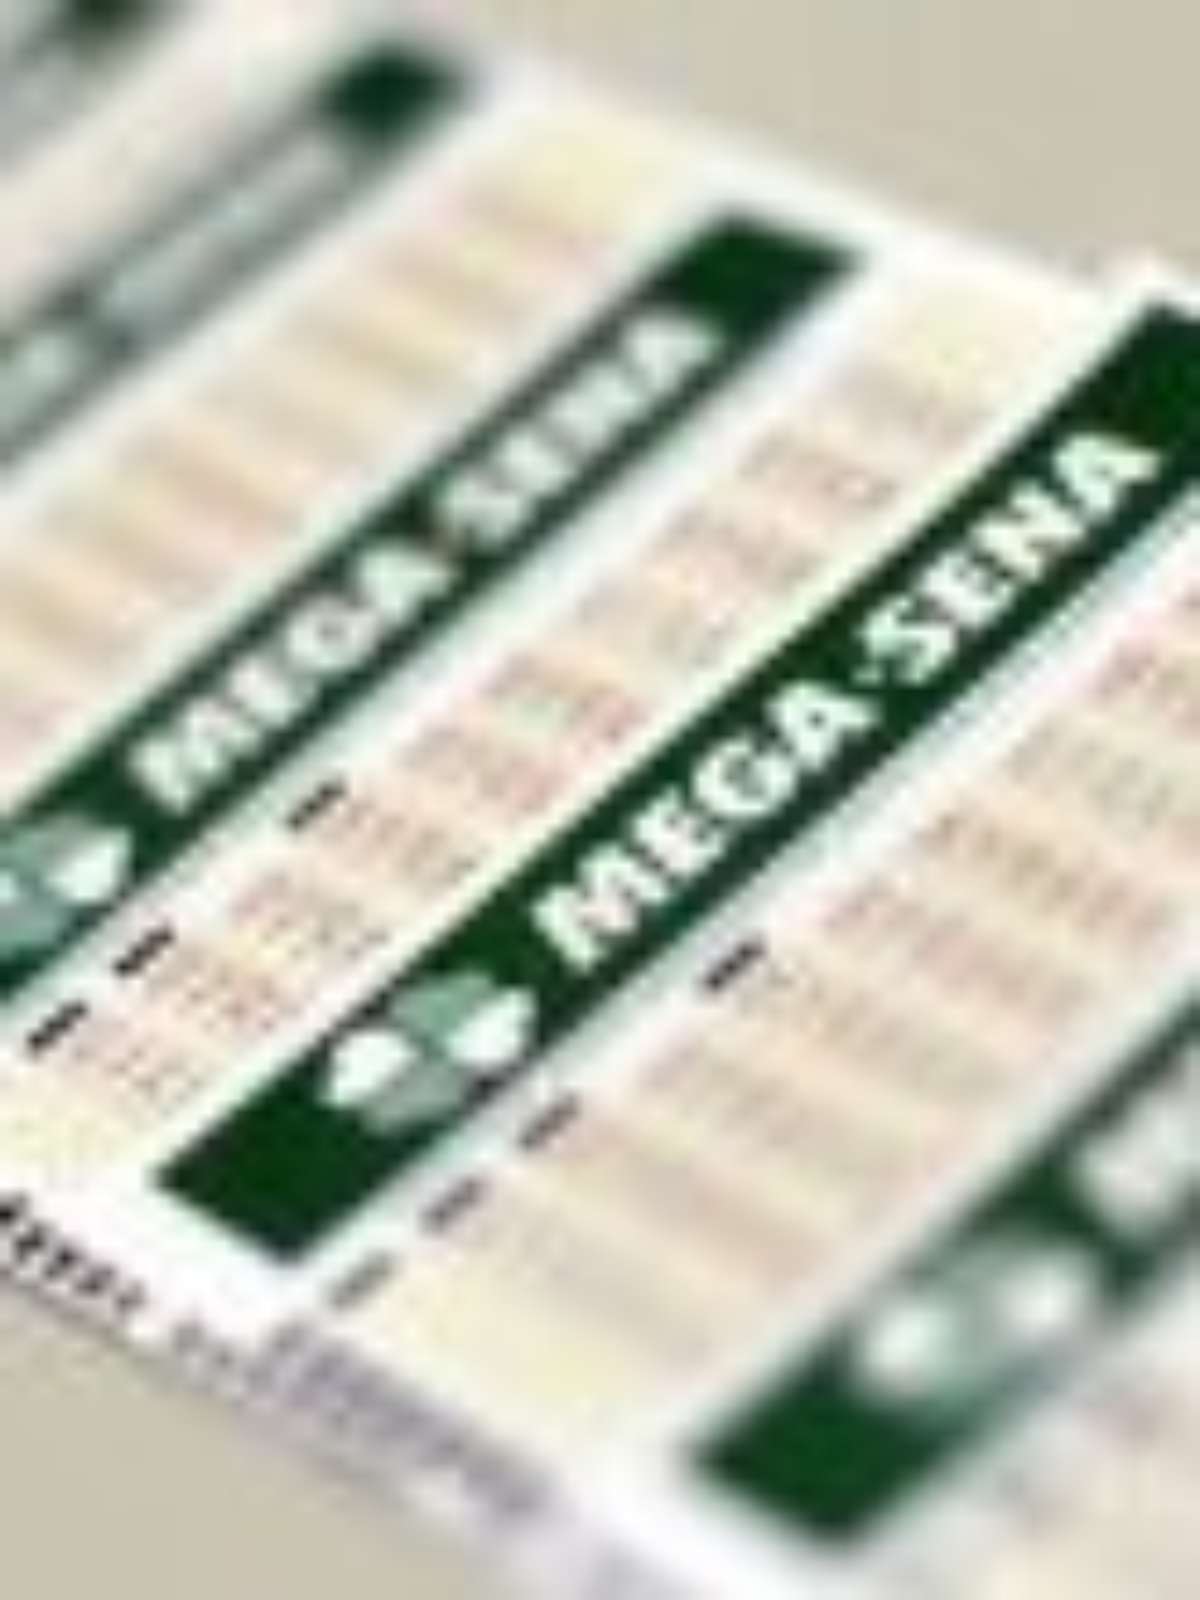 RCT Loterias - MEGA-SENA 51 MILHÕES +MILIONÁRIA 50 MILHÕES PARA 17